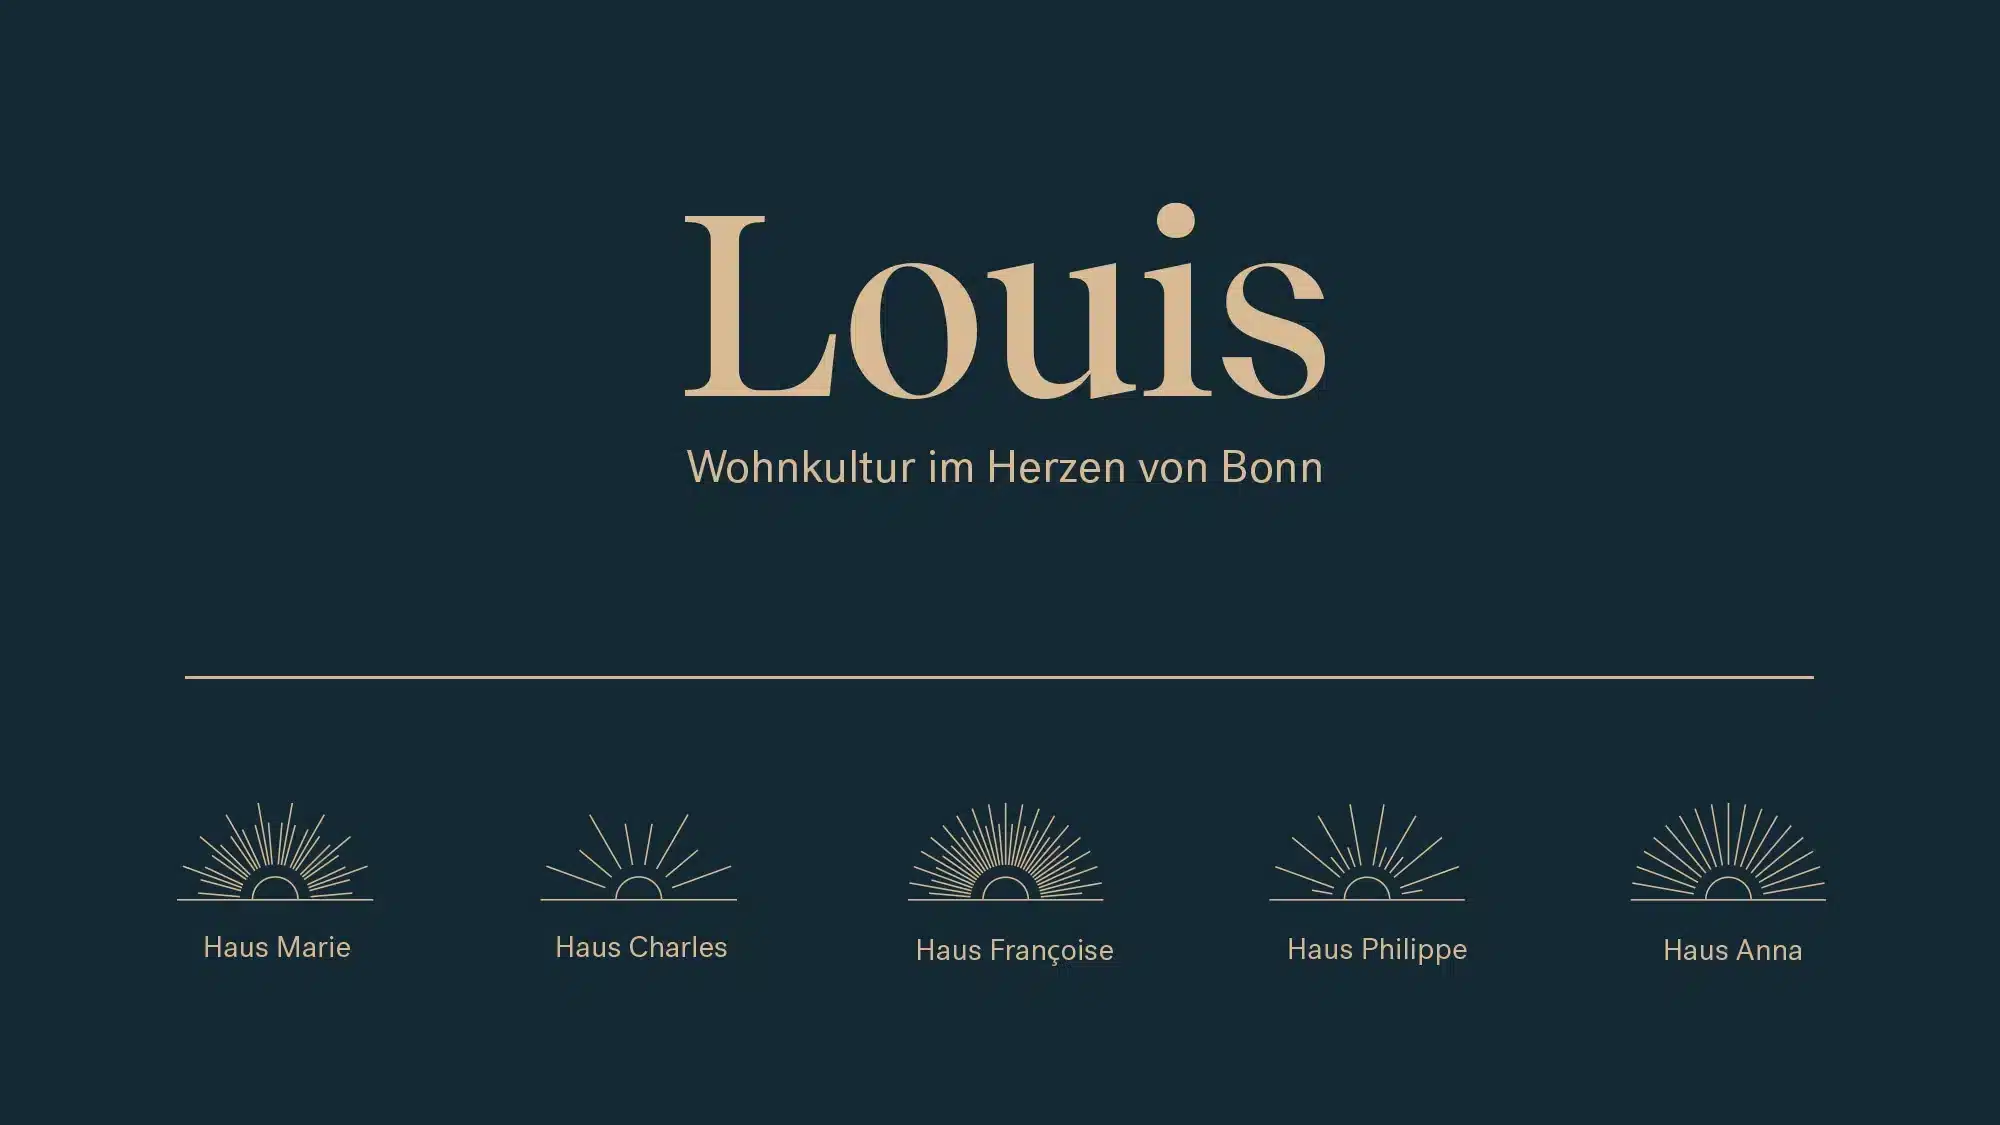 Louis Wohnkultur aus Bonn. 360° Markenbildung